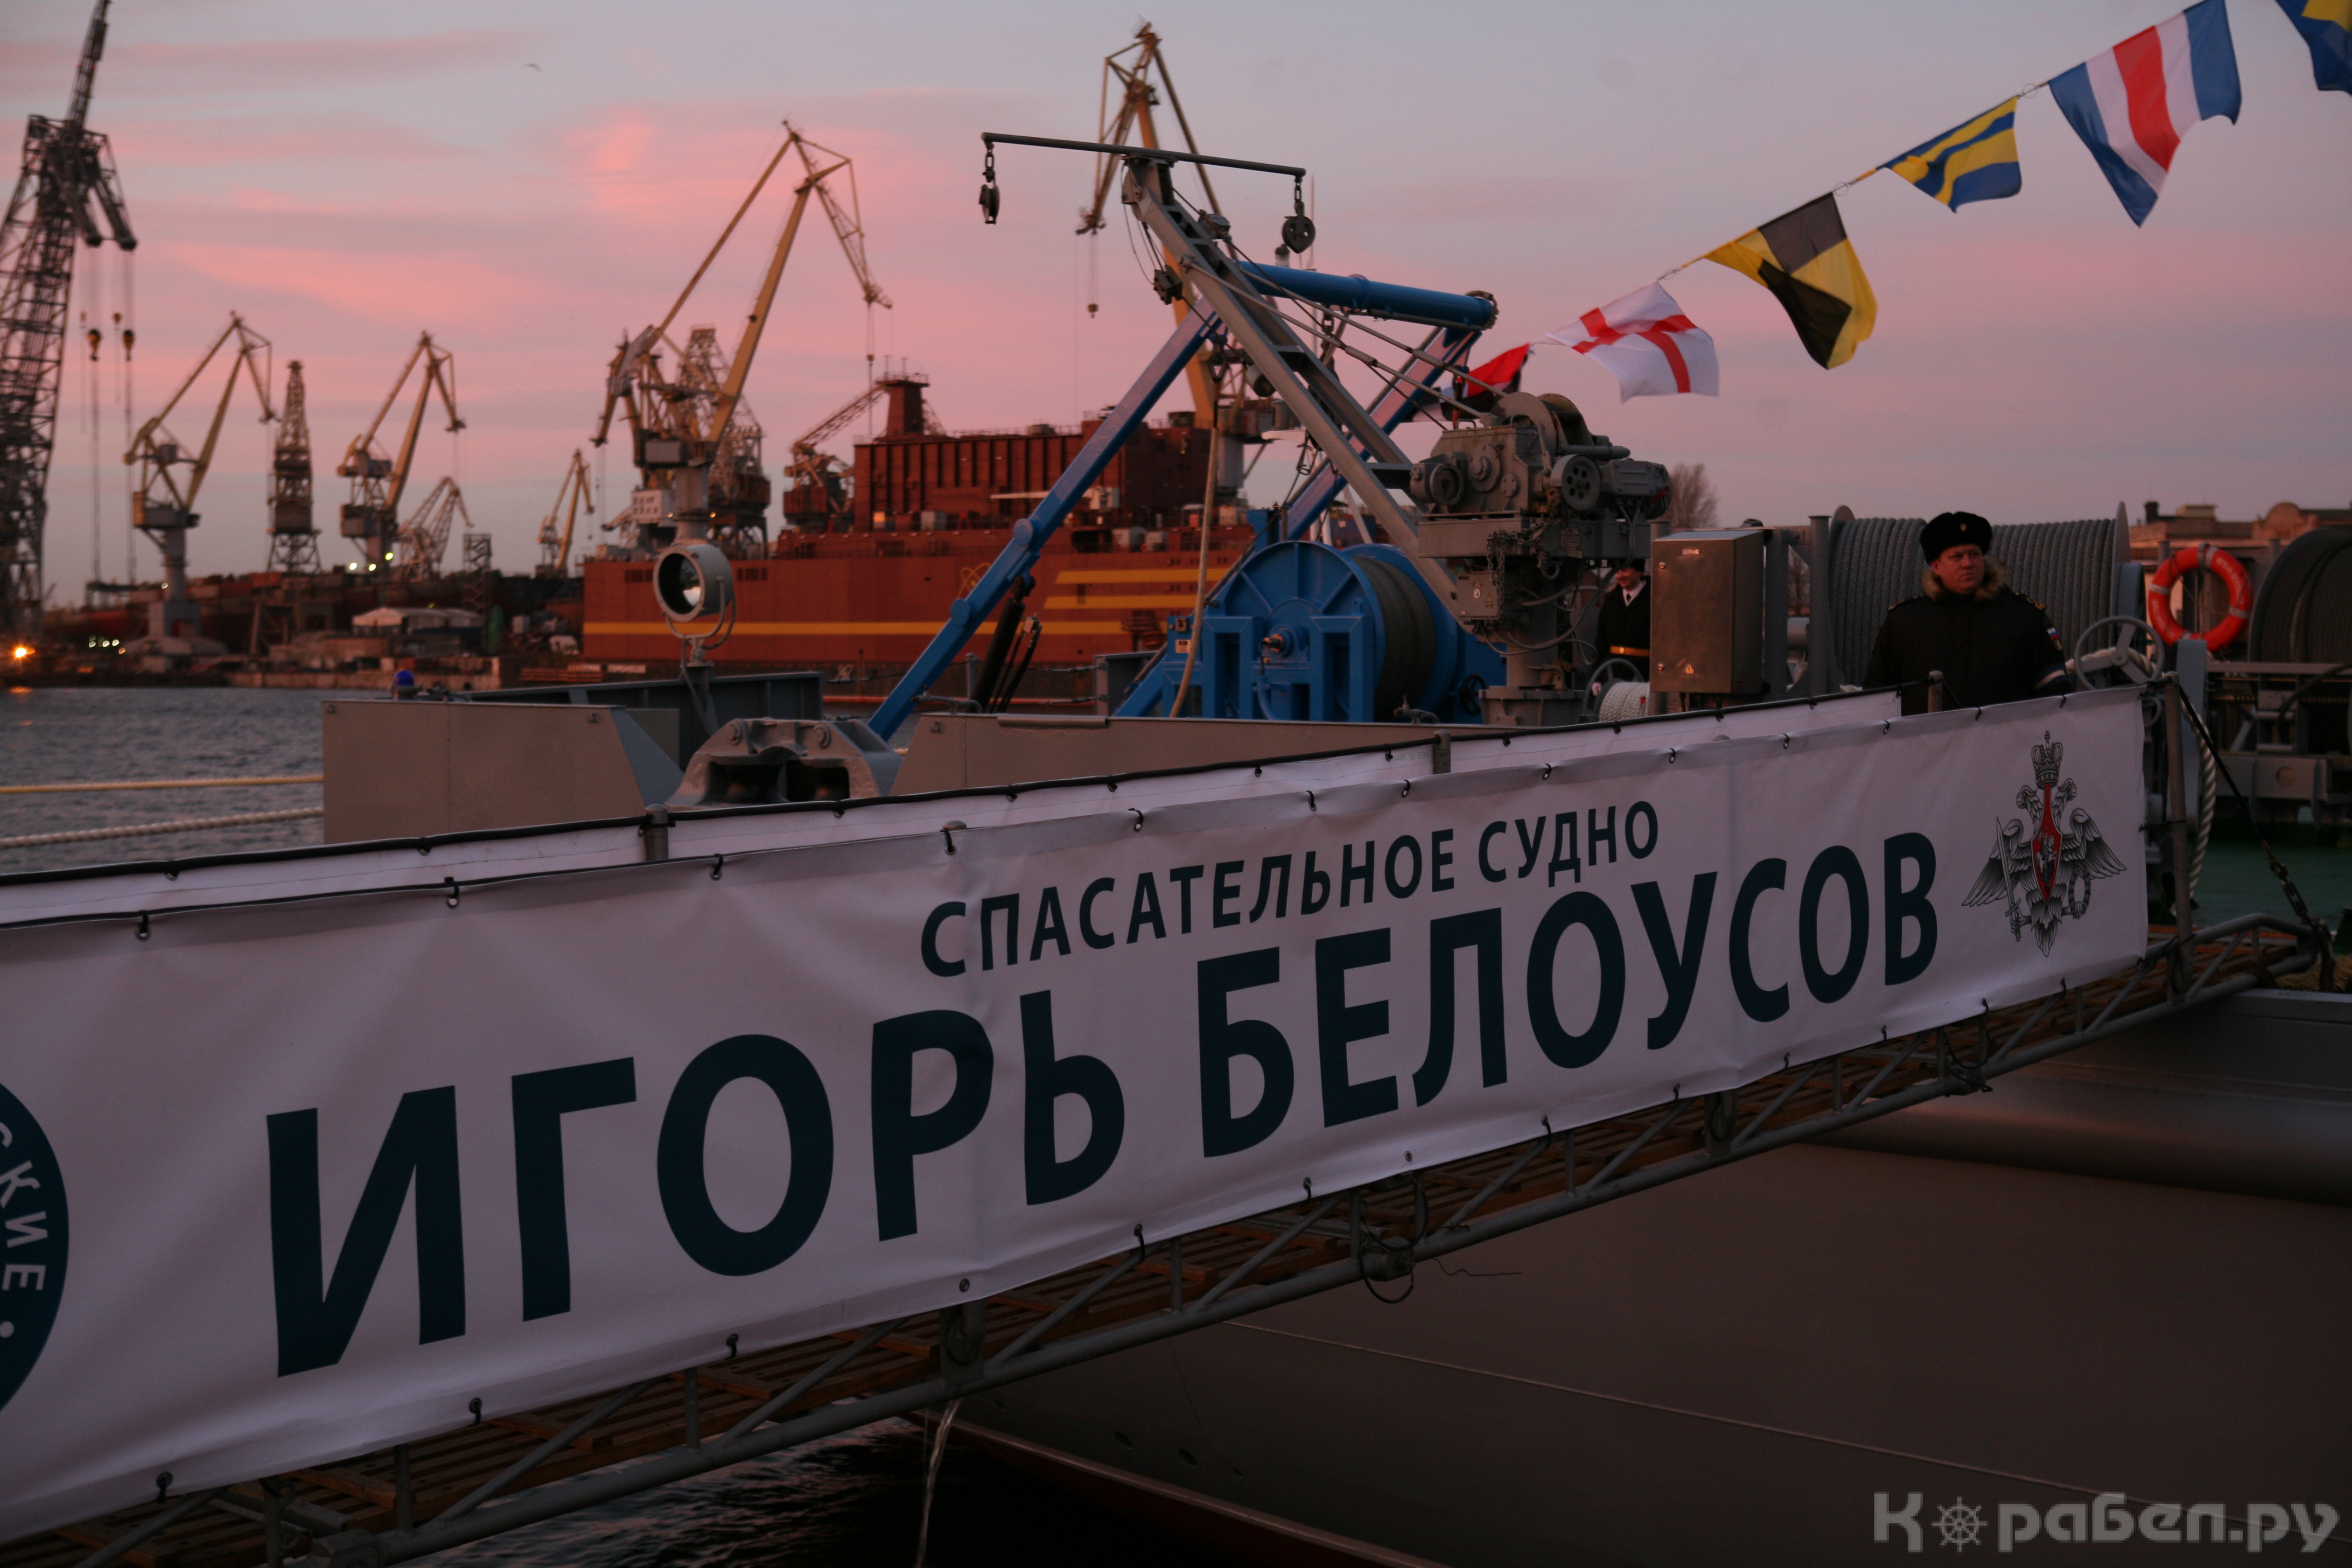 Подъем флага на спасательном судне "Игорь Белоусов"